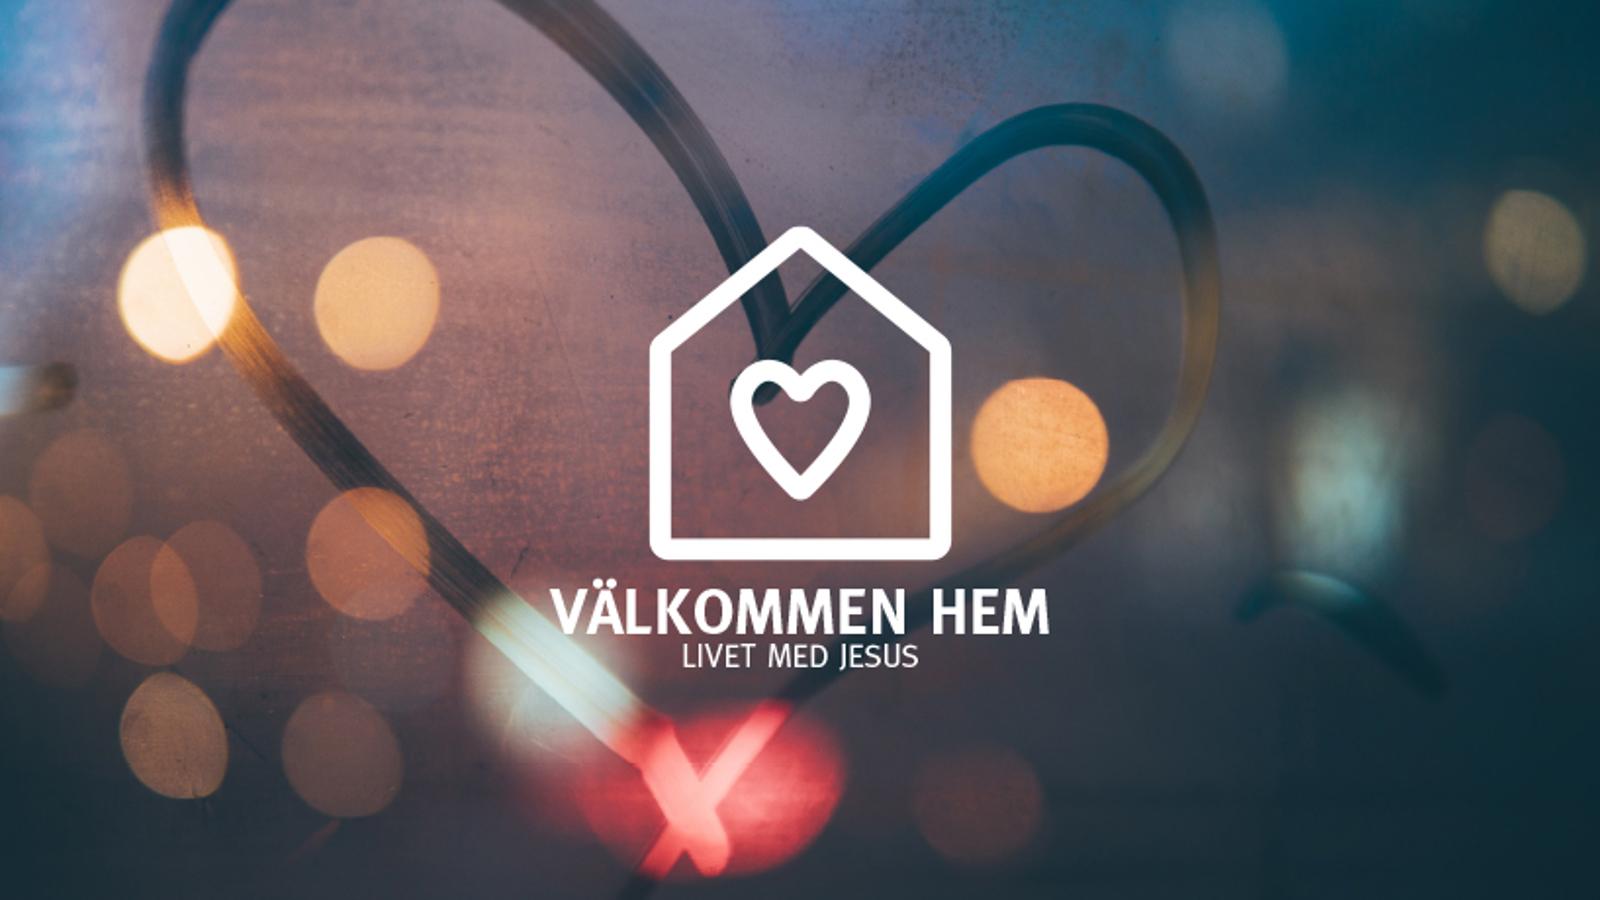 En logotyp i form av ett hus med ett hjärta på, med texten "Välkommen hem. Livet med Jesus". I bakgrunden syns ett ritat hjärta på ett immigt fönster.